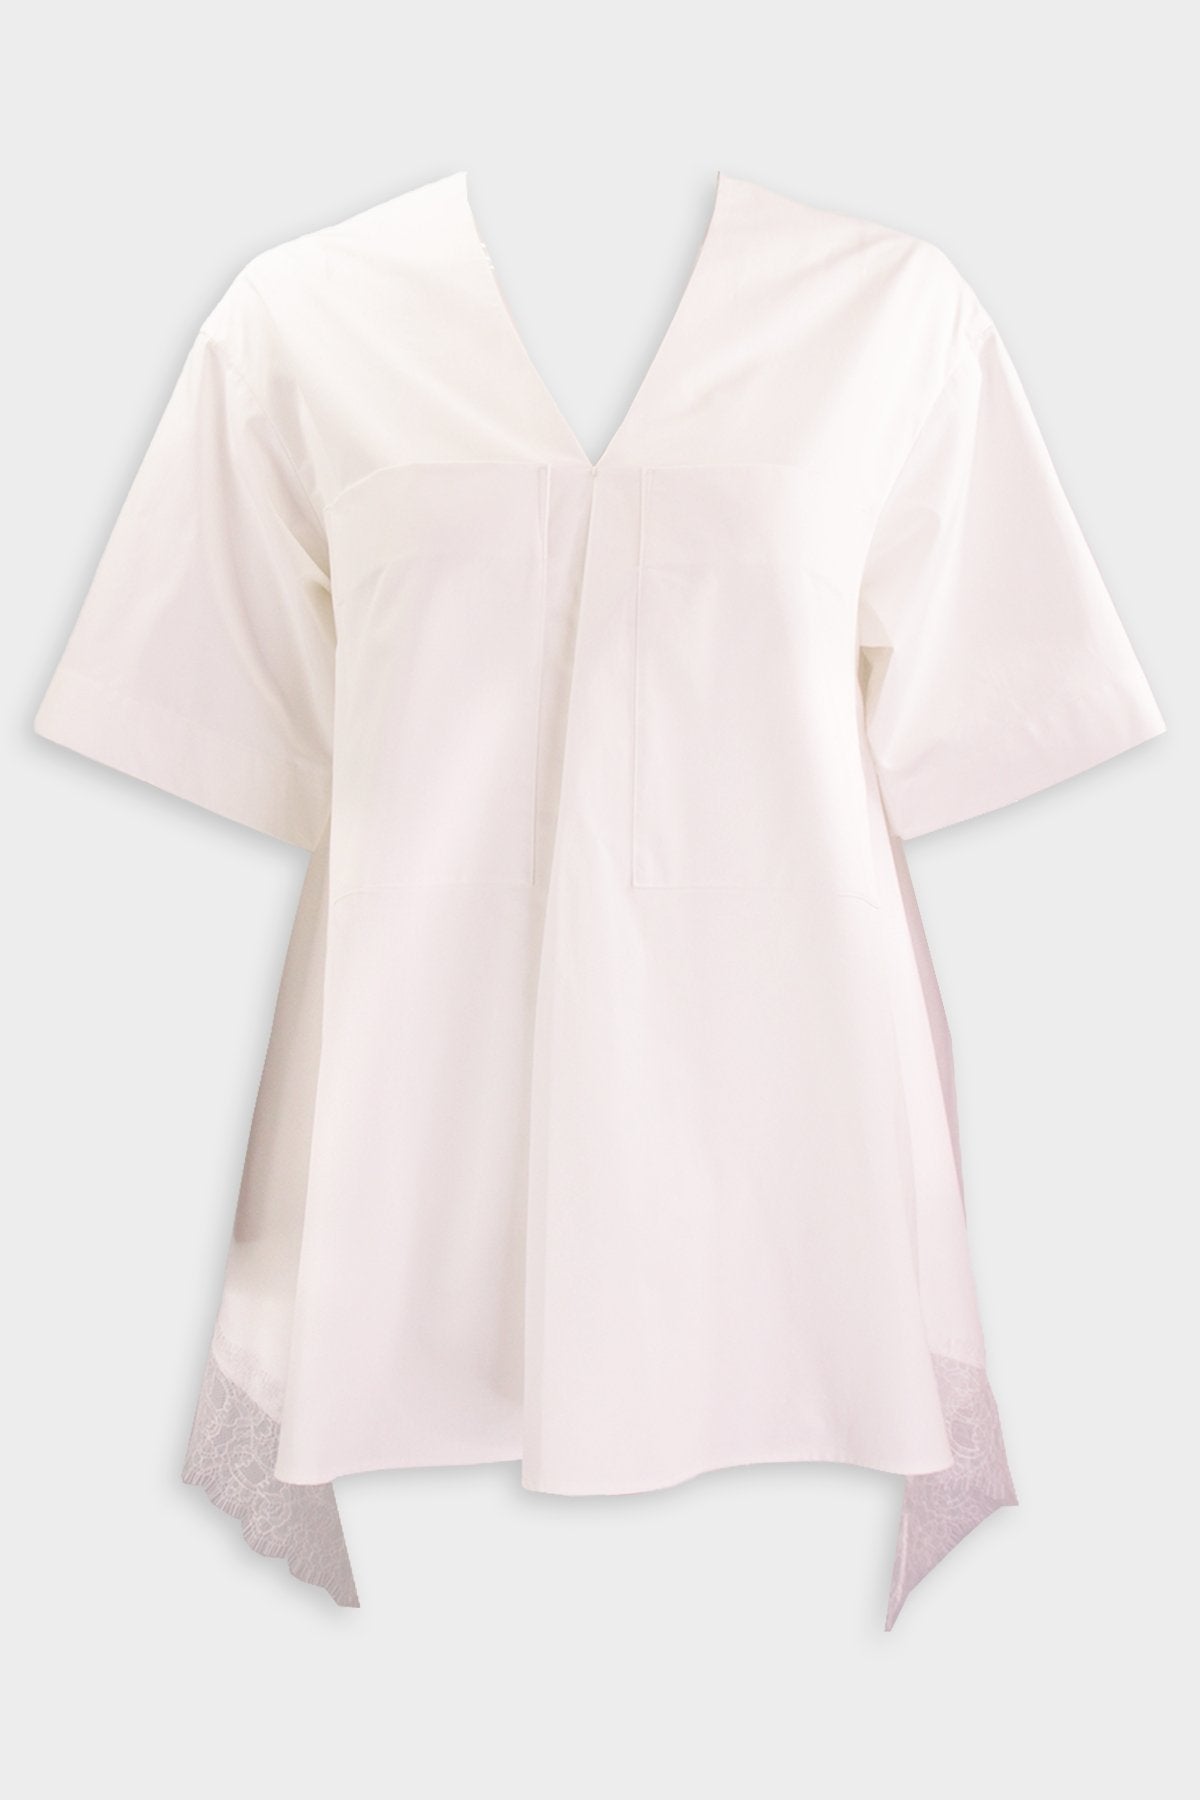 Embellished Lace Trimmed Short Sleeve Blouse in Ivory - shop-olivia.com